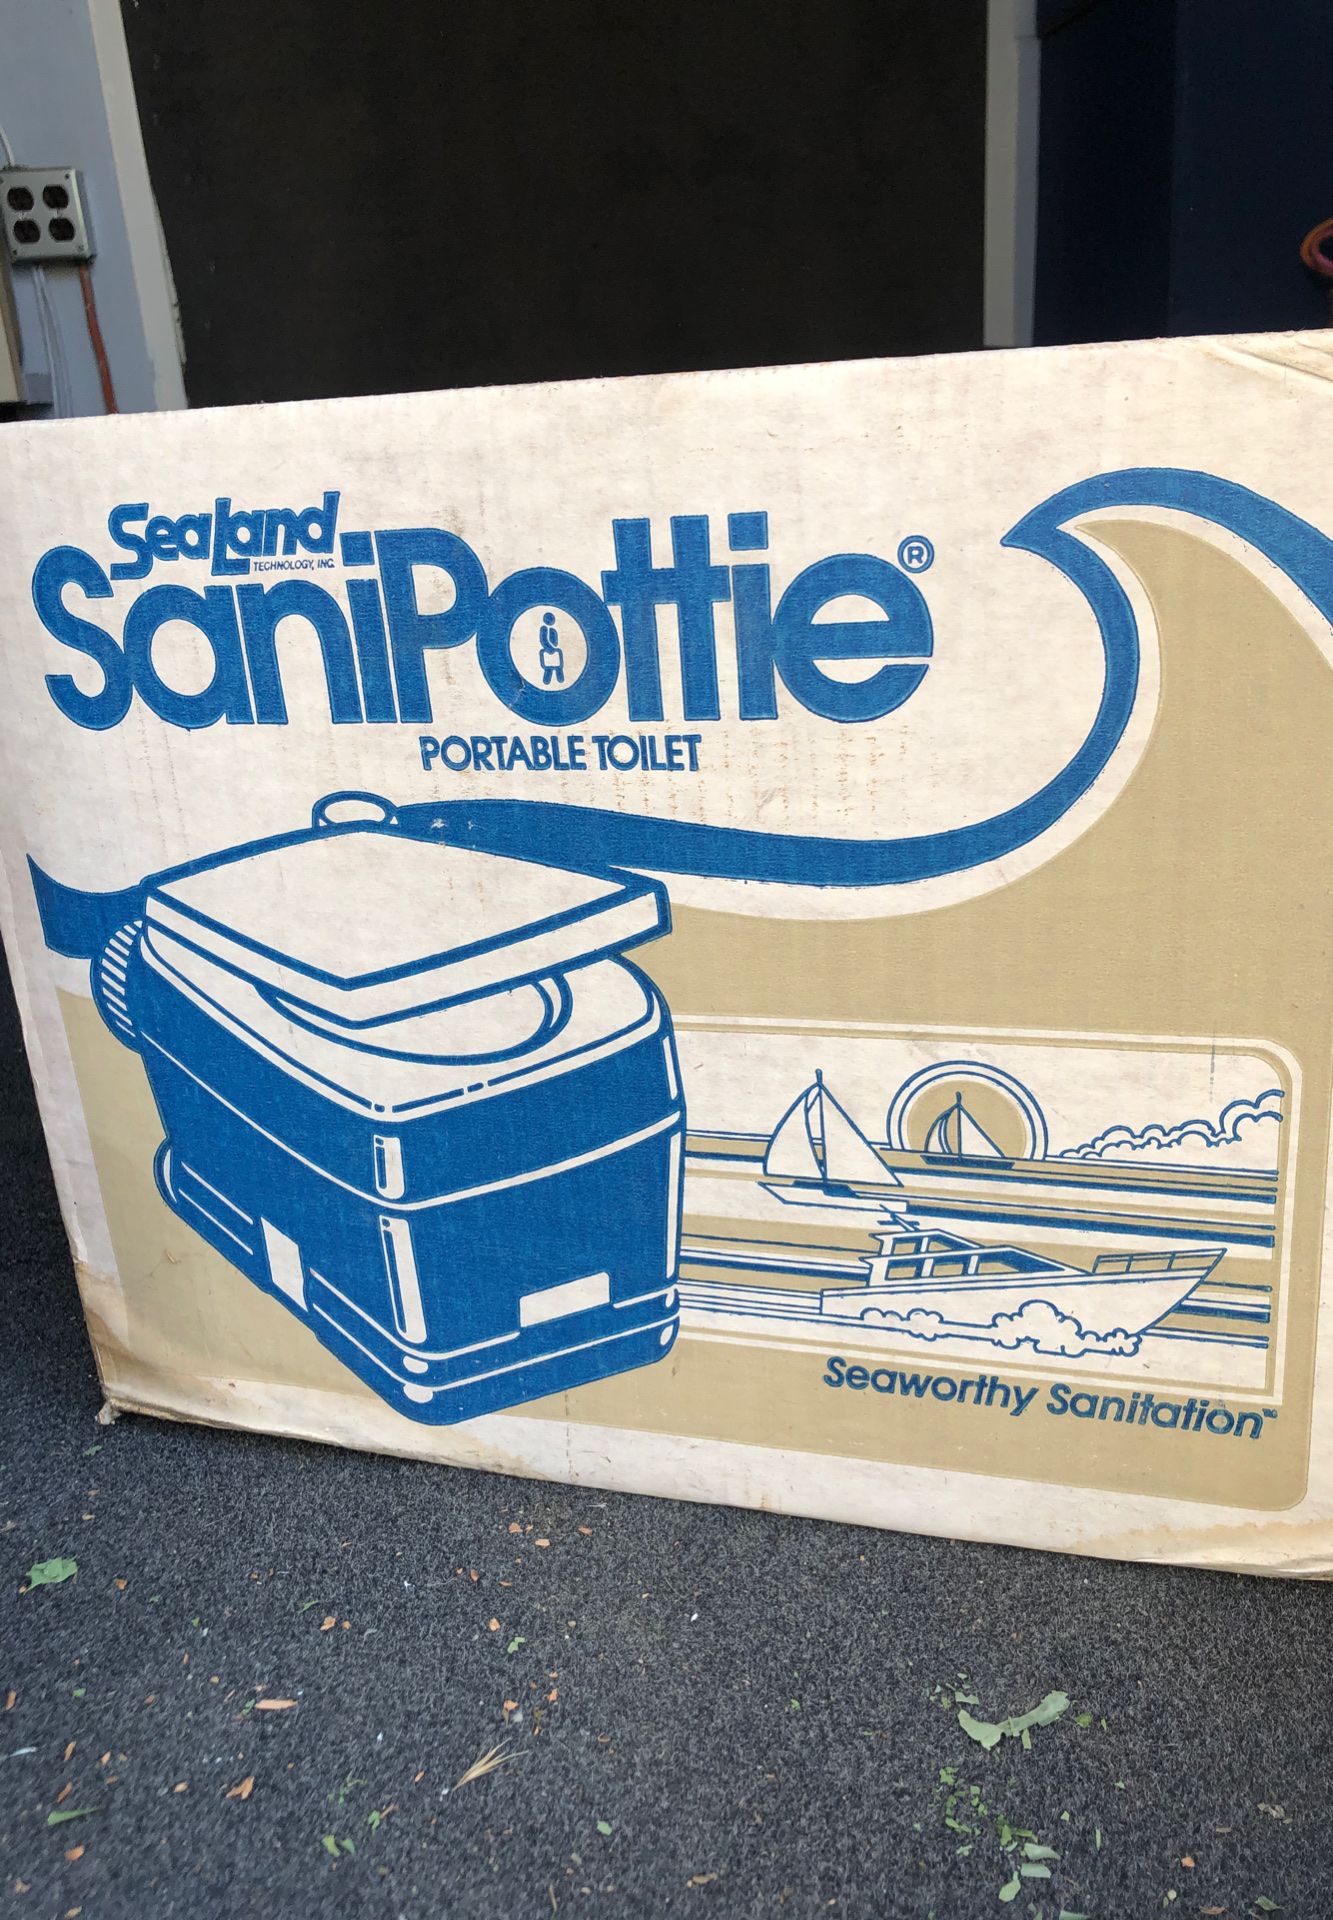 RV or Boat Accessories In original box. “SEA LAND” portable toilet.